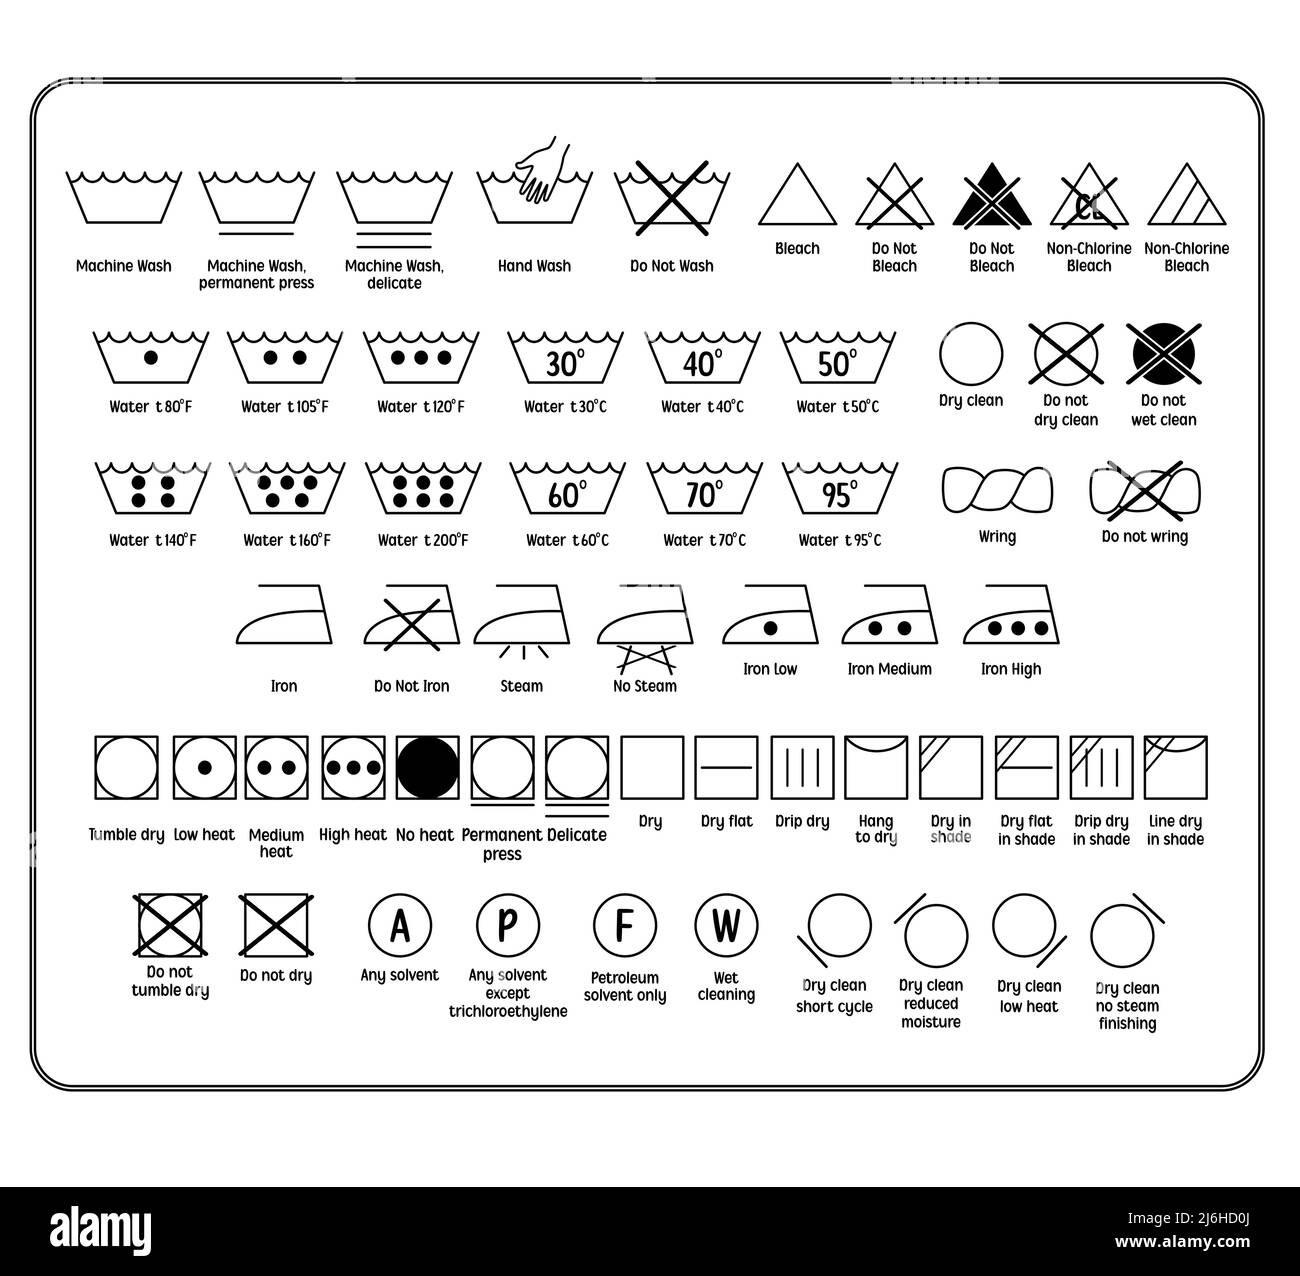 Wash care symbols Banque de photographies et d'images à haute résolution -  Alamy